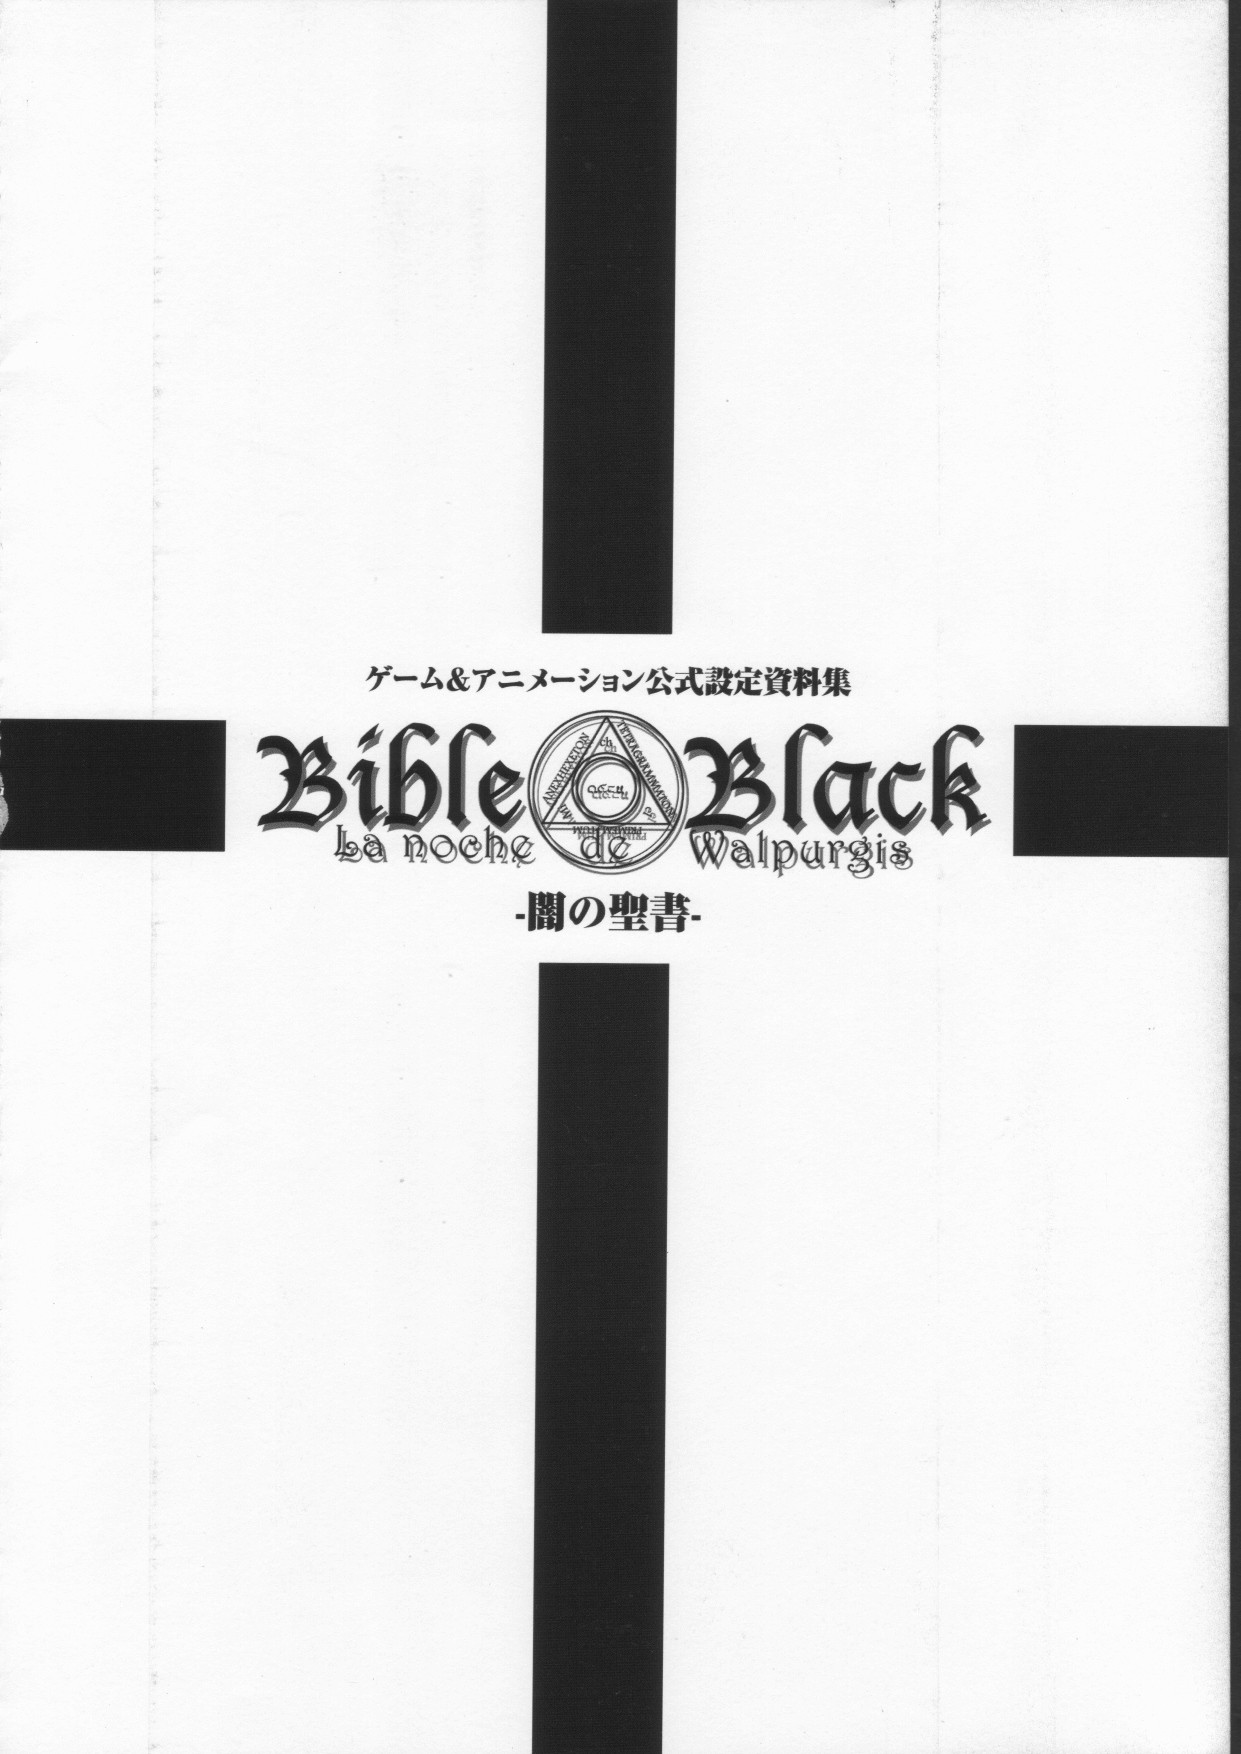 Bible Black バイブルブラック ゲーム&amp;アニメーション公式設定資料集 BibleBlack バイブルブラック ゲーム&amp;アニメーション公式設定資料集